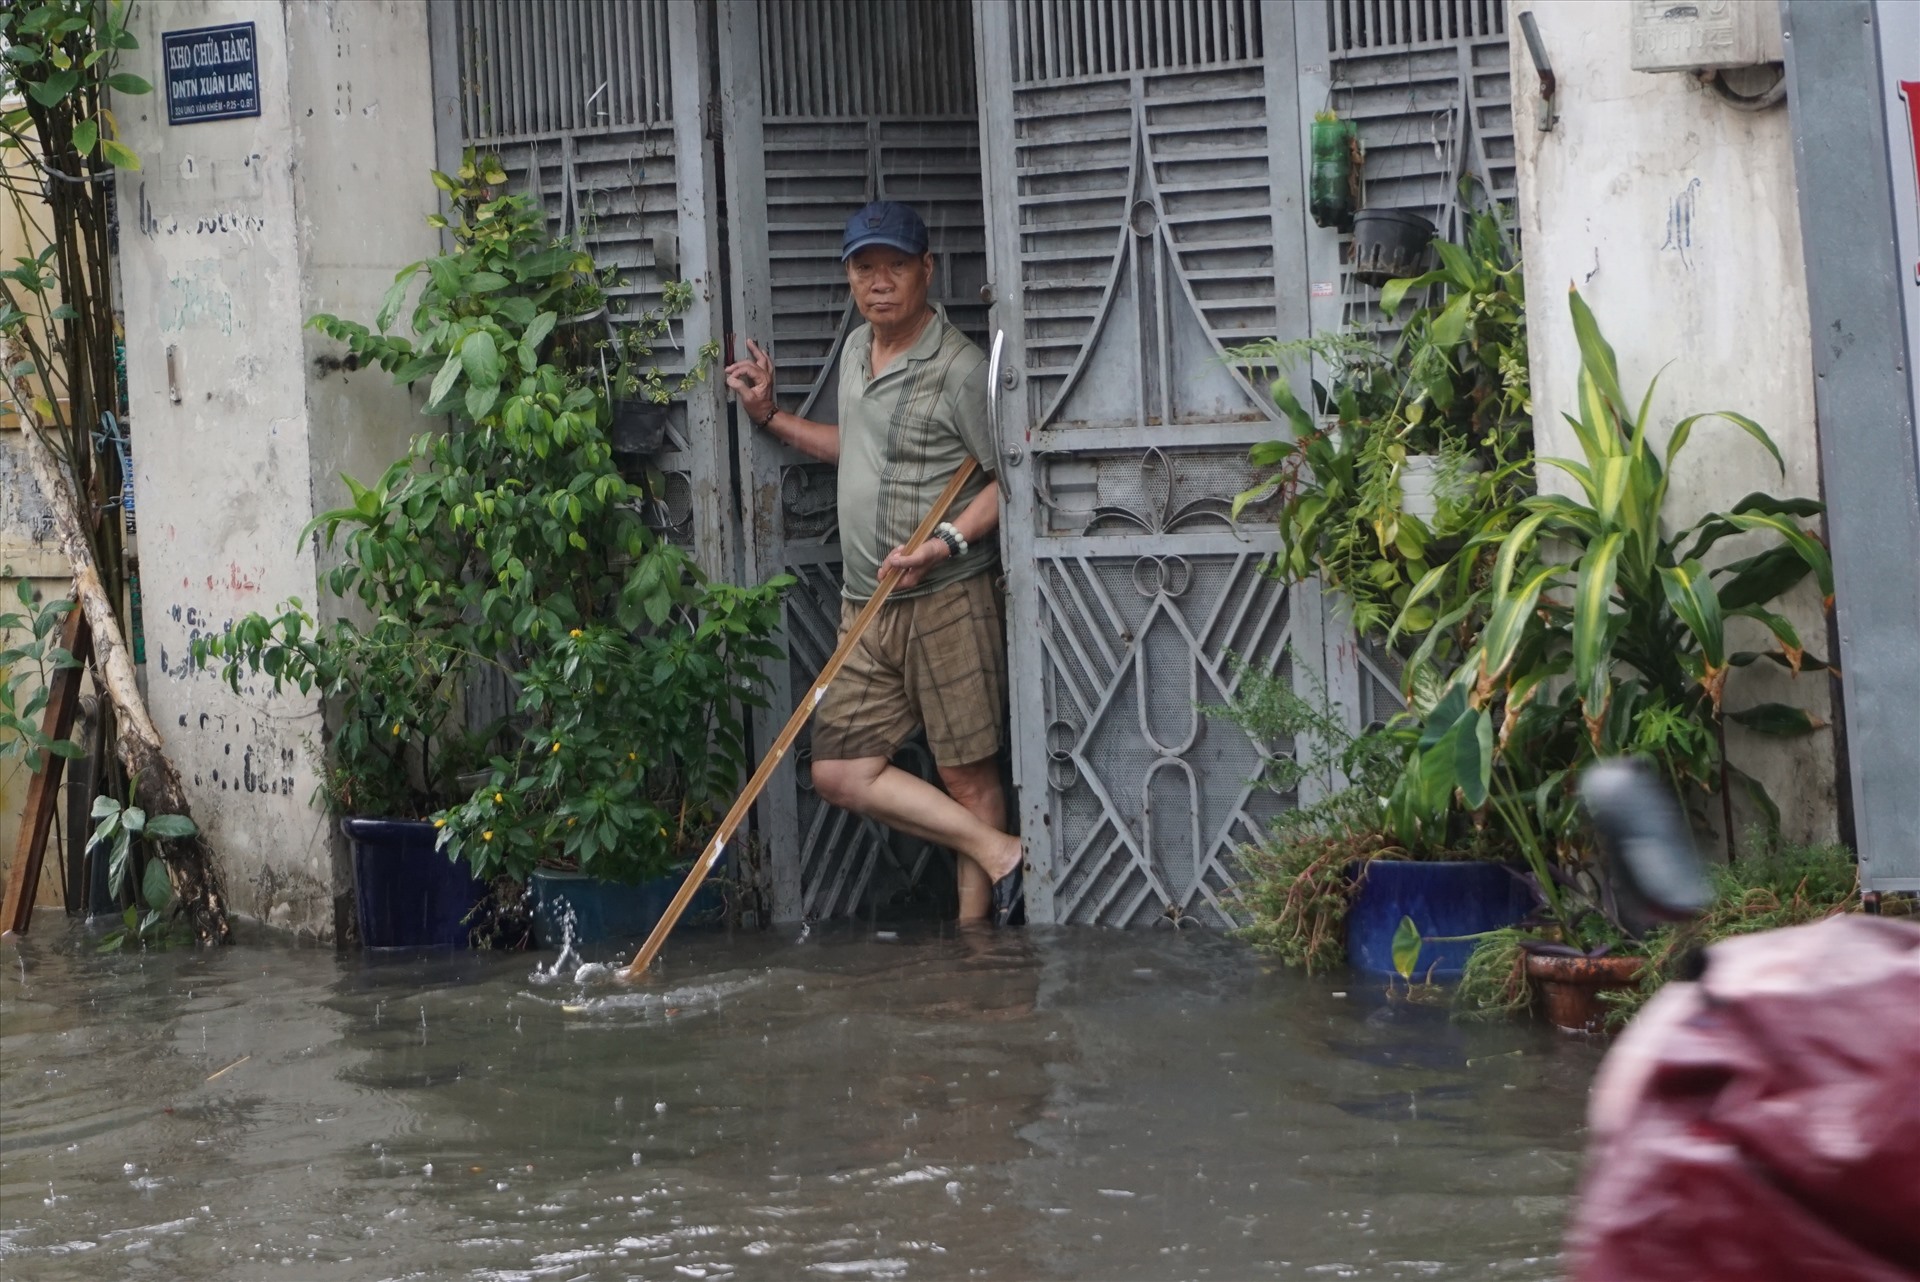 Ông Minh (48 tuổi, nhà trên đường Ung Văn Khiêm) cho biết mưa dai dẳng từ trưa, nước ngoài đường dâng cao, tràn vào nhà. “Tui phải đứng cầm gậy vớt rác khỏi trôi vào trong nha” - ông Minh nói.